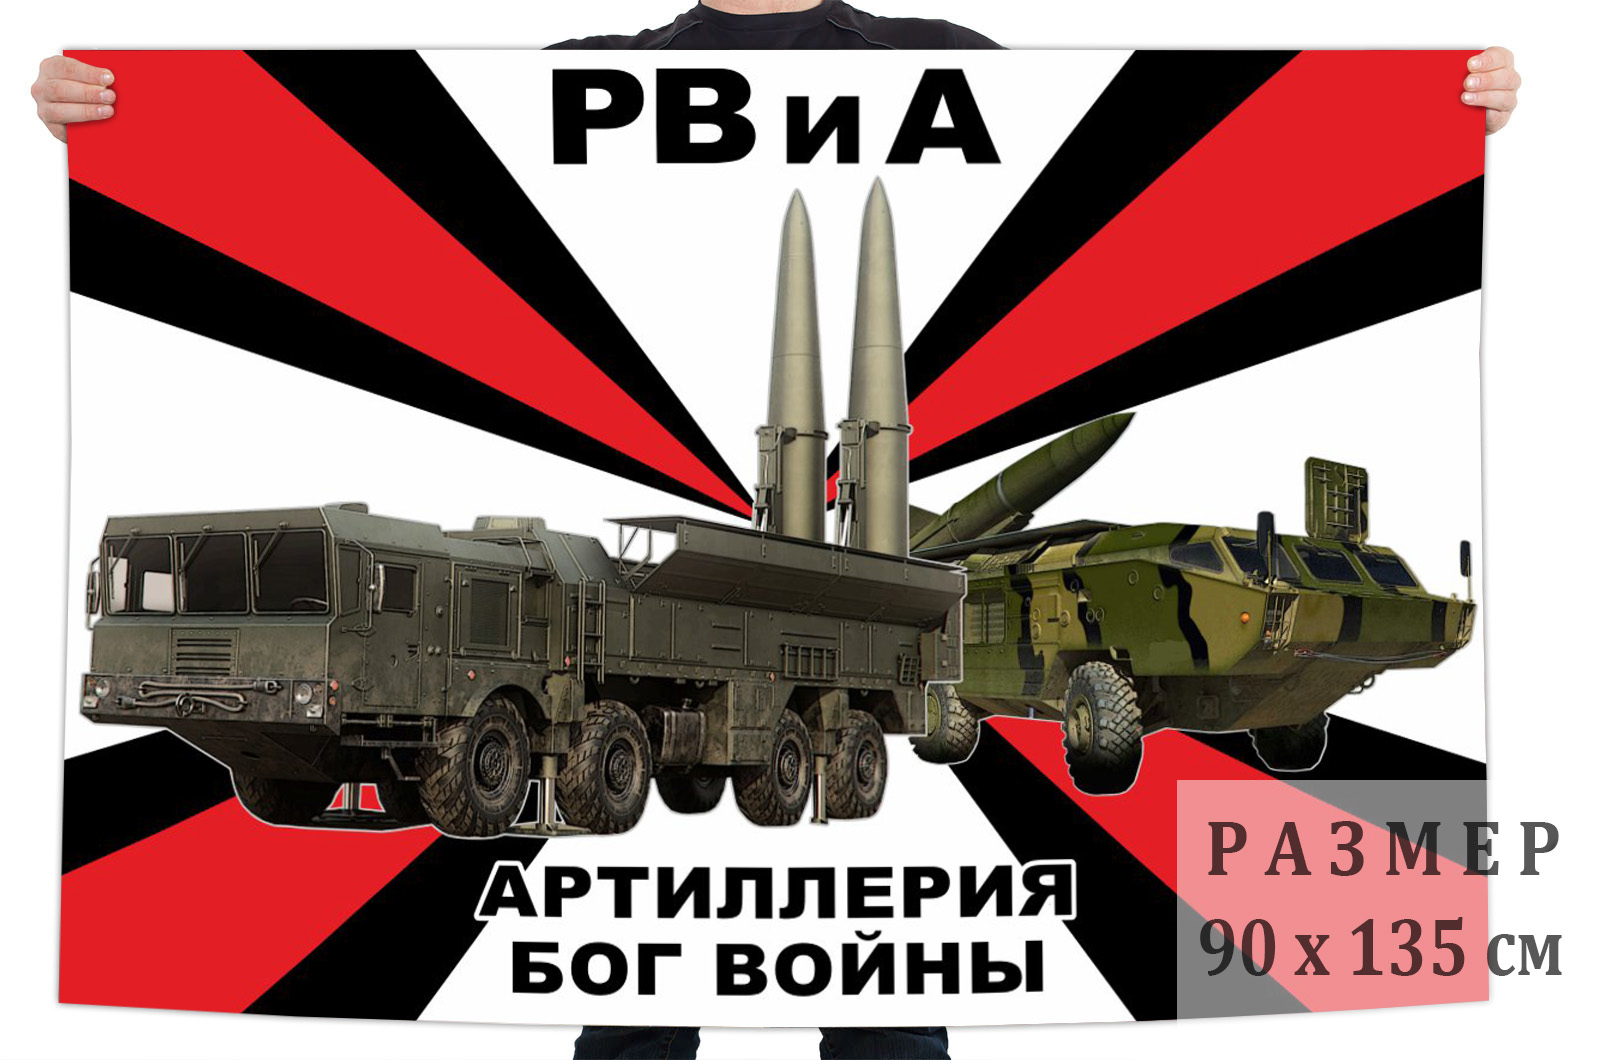 Флаг с девизом РВиА "Артиллерия - Бог войны"